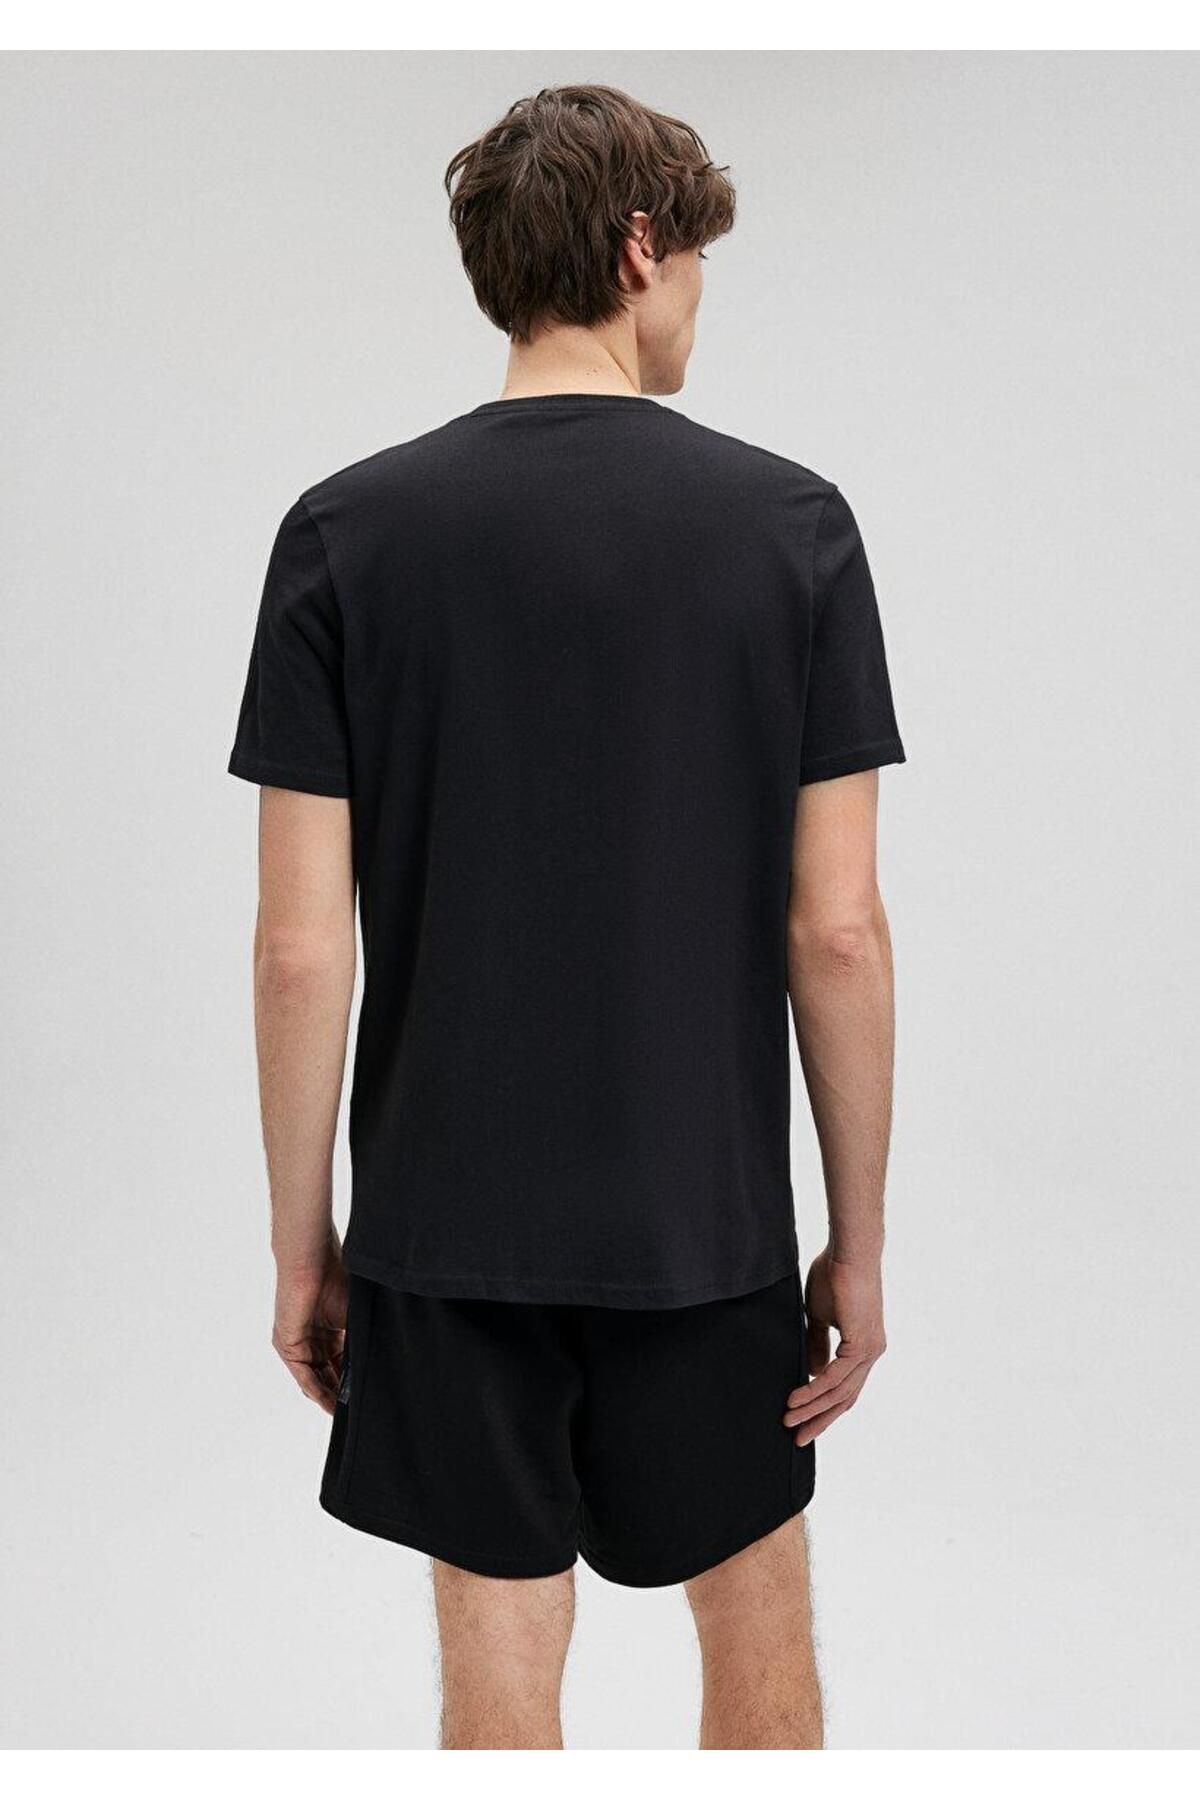 Mavi تی شرت آرم Pro Men's Black 0612174-900